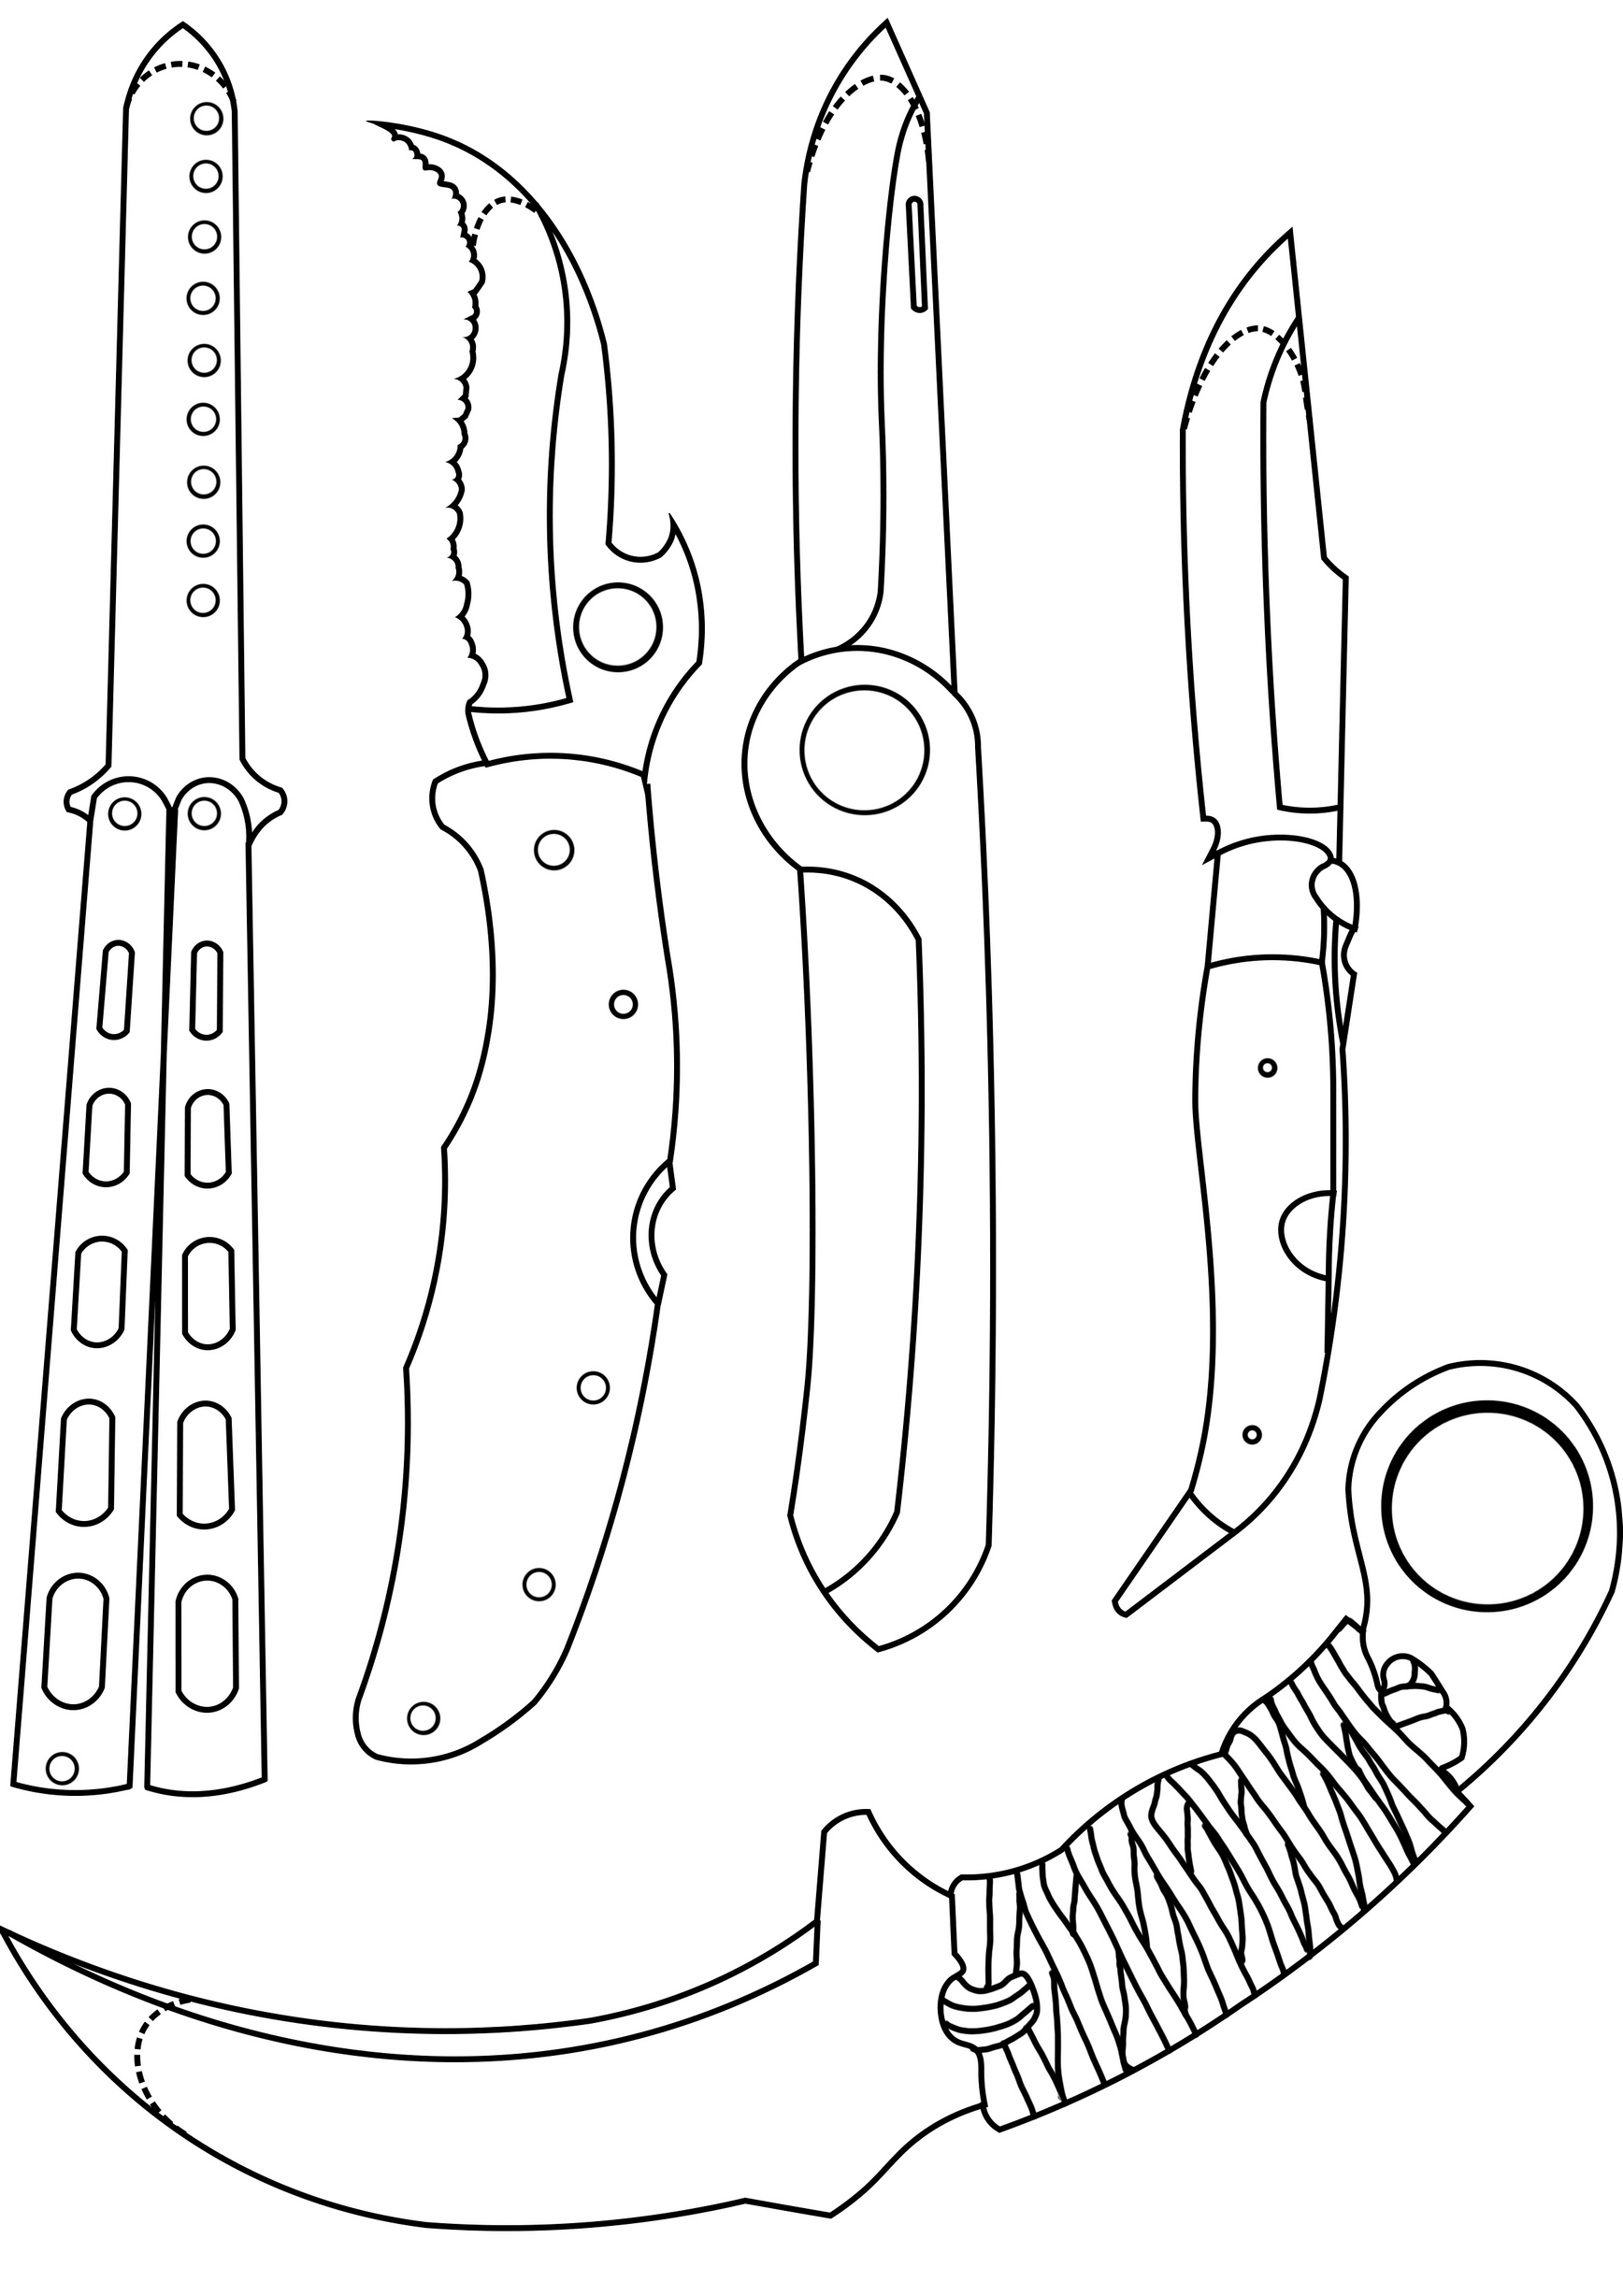 Aprende a fabricar cuchillos de entrenamiento con plástico ...